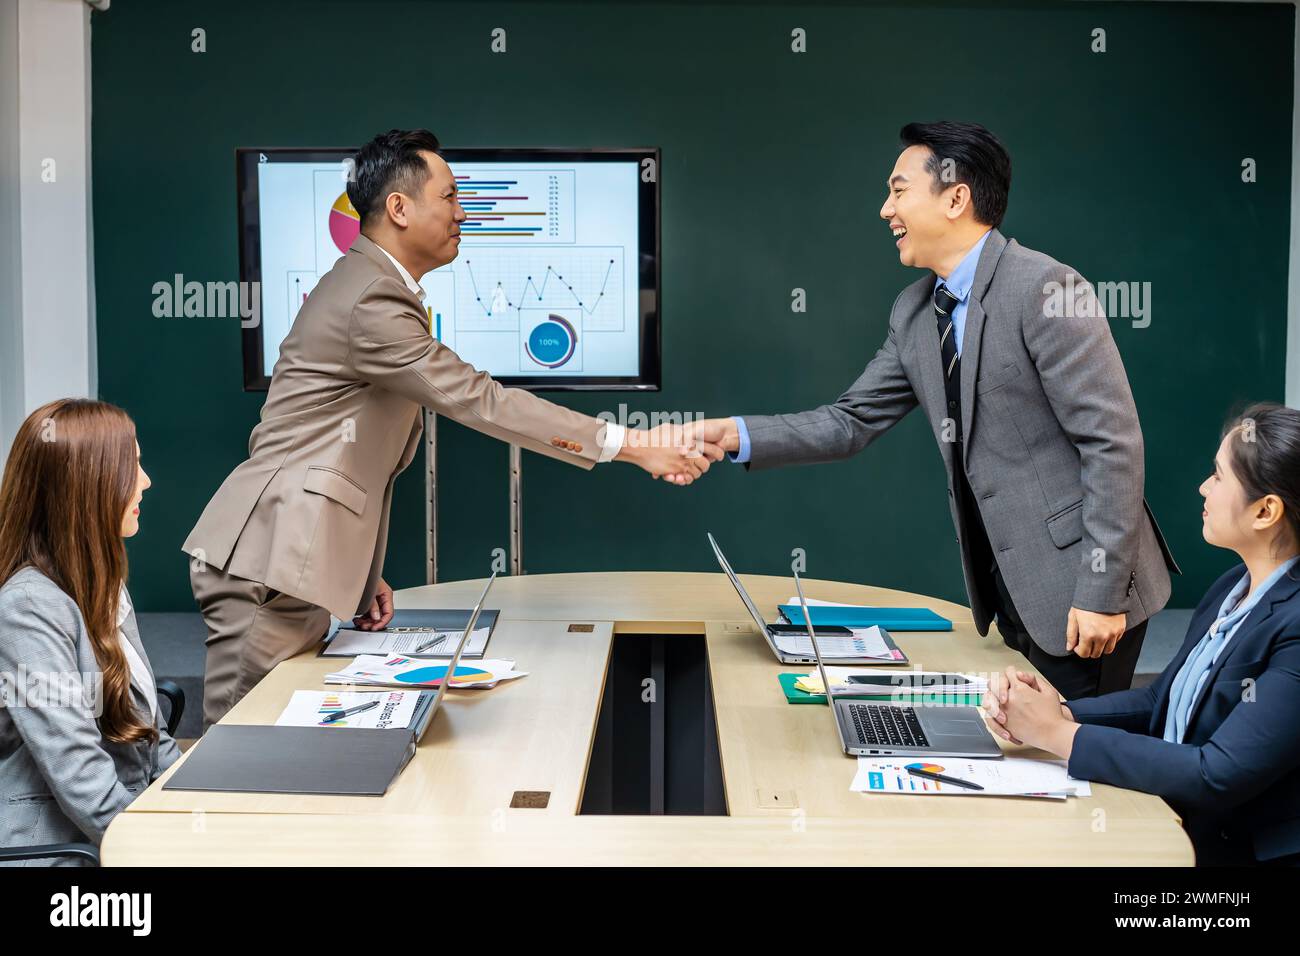 Les hommes d'affaires se serrent la main dans une salle de réunion avec écran de projection Banque D'Images